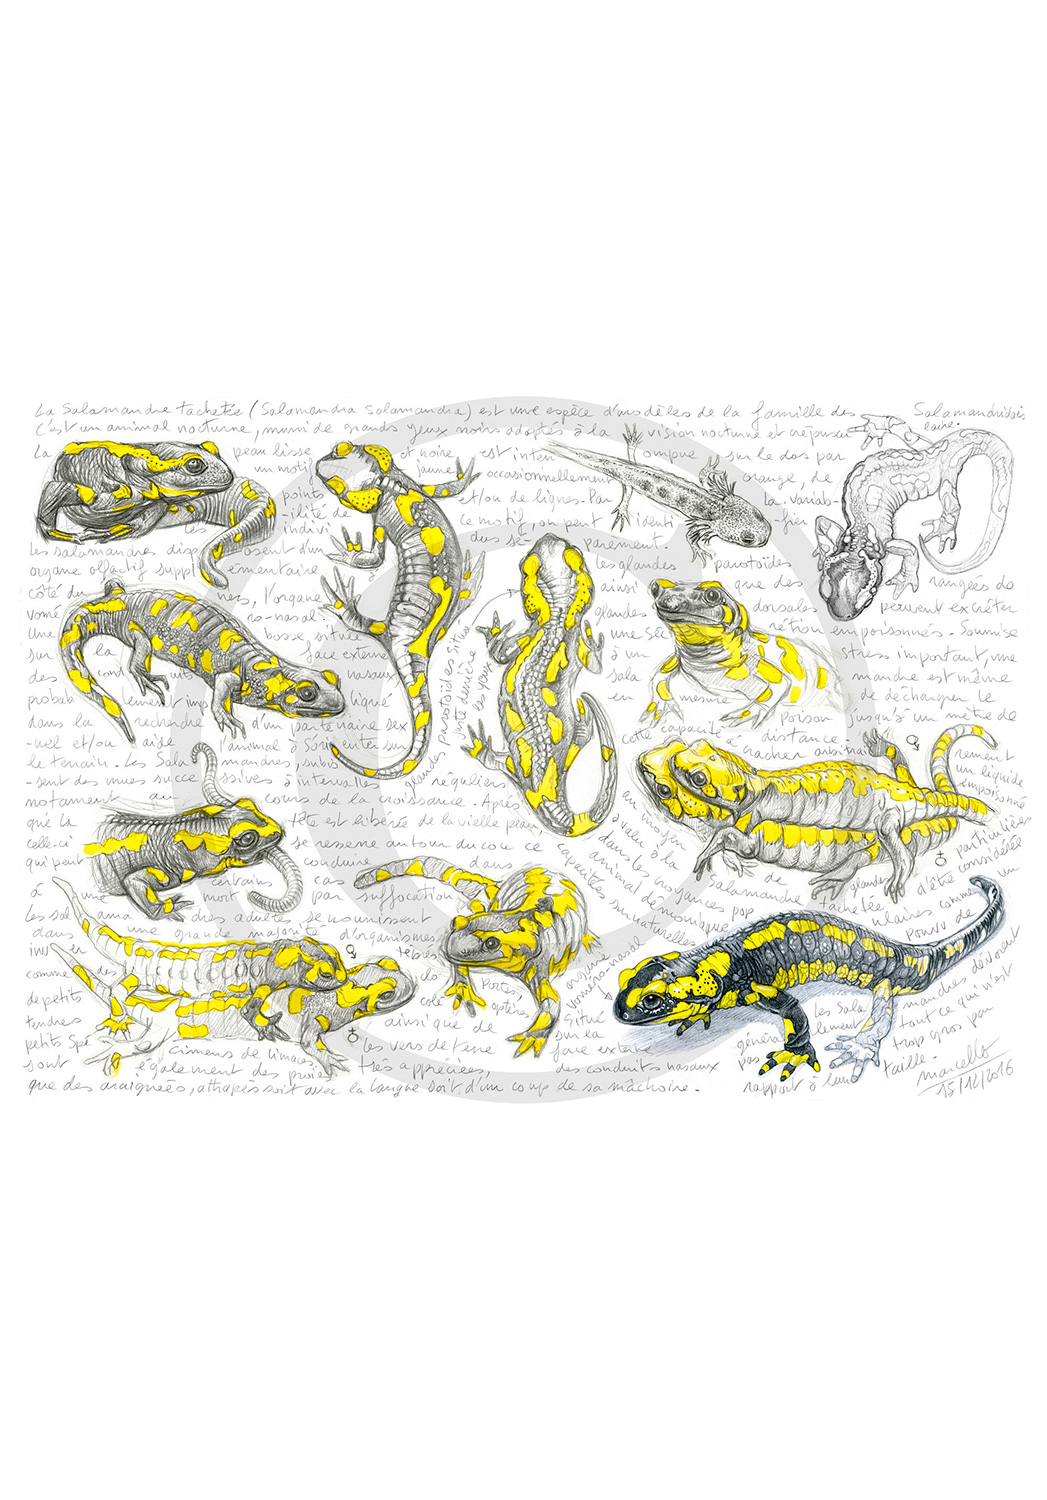 Marcello-art: Wild temperate zones 95 - Salamander